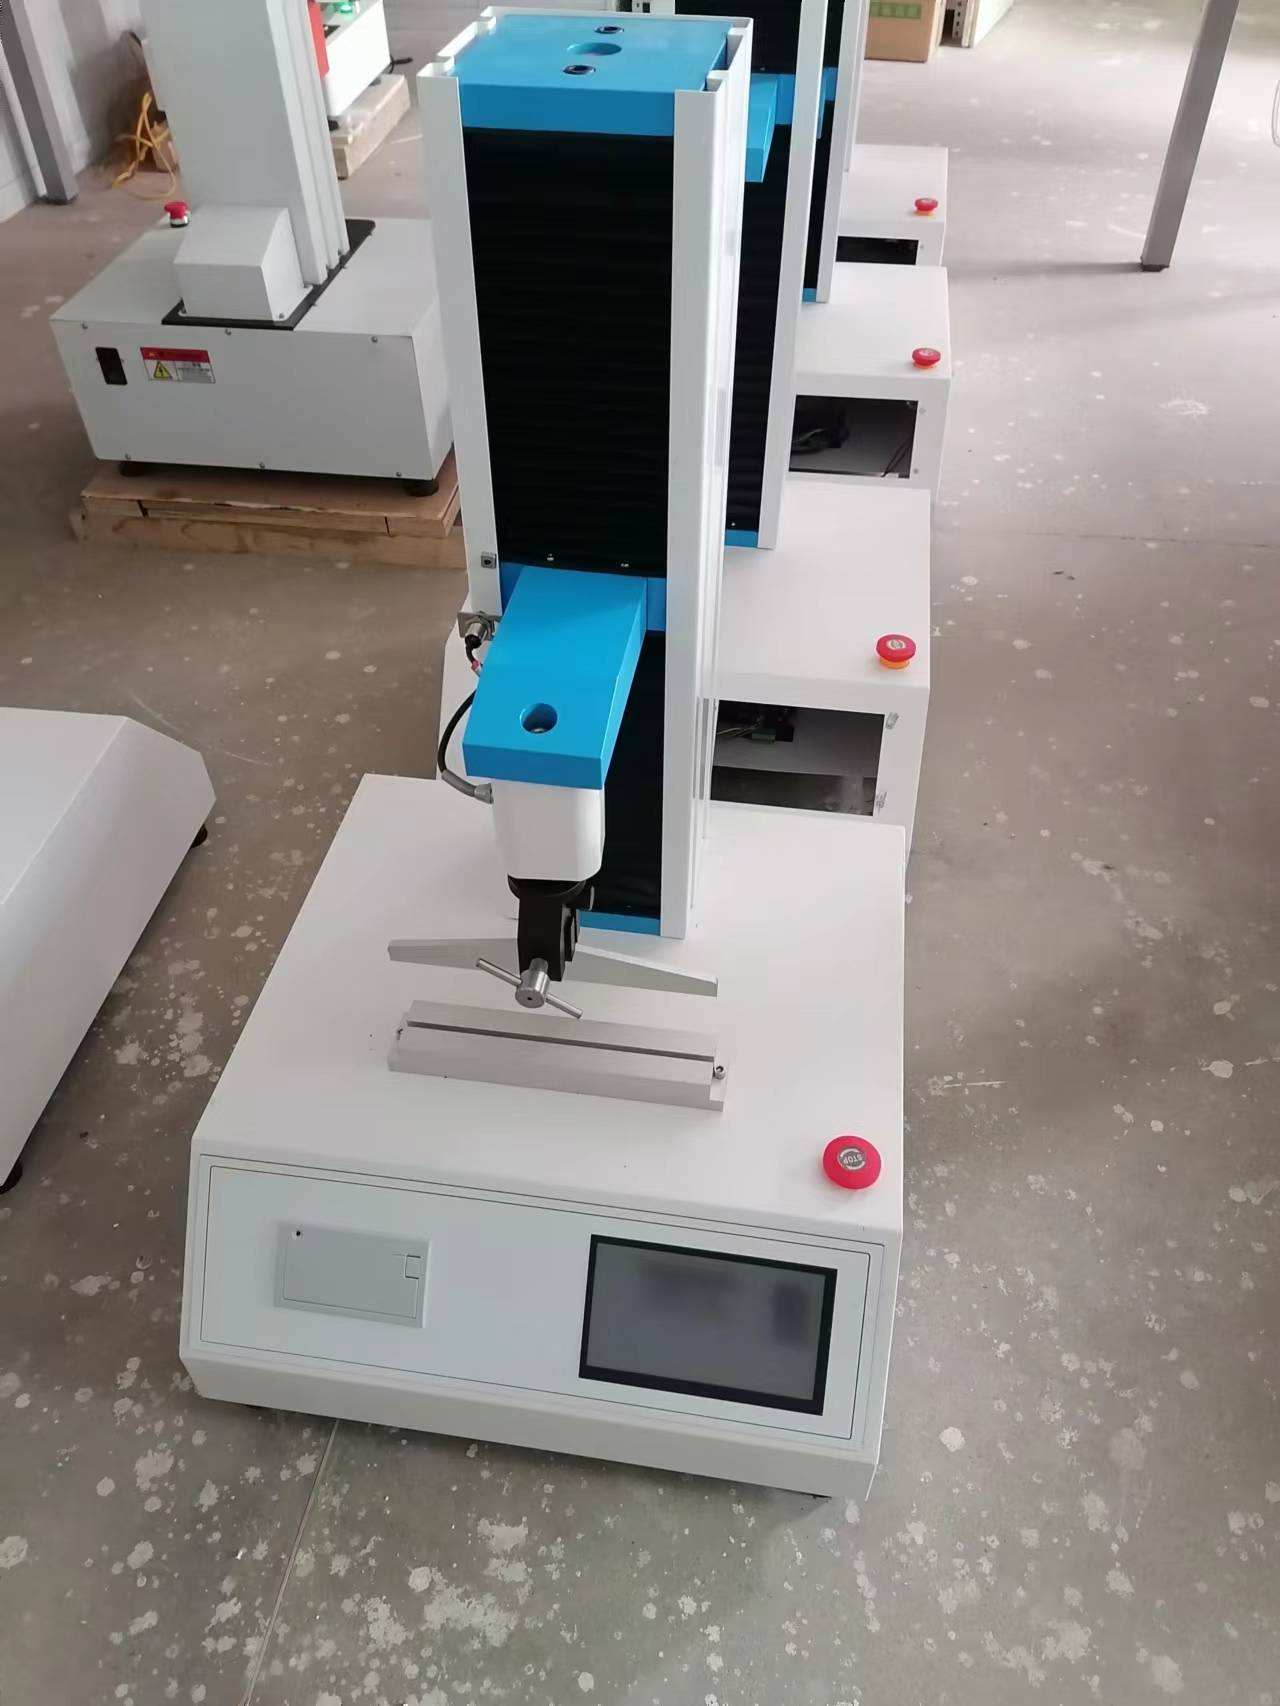 HP612口腔粘膜粘附力测试仪 生物胶挤压力测试仪